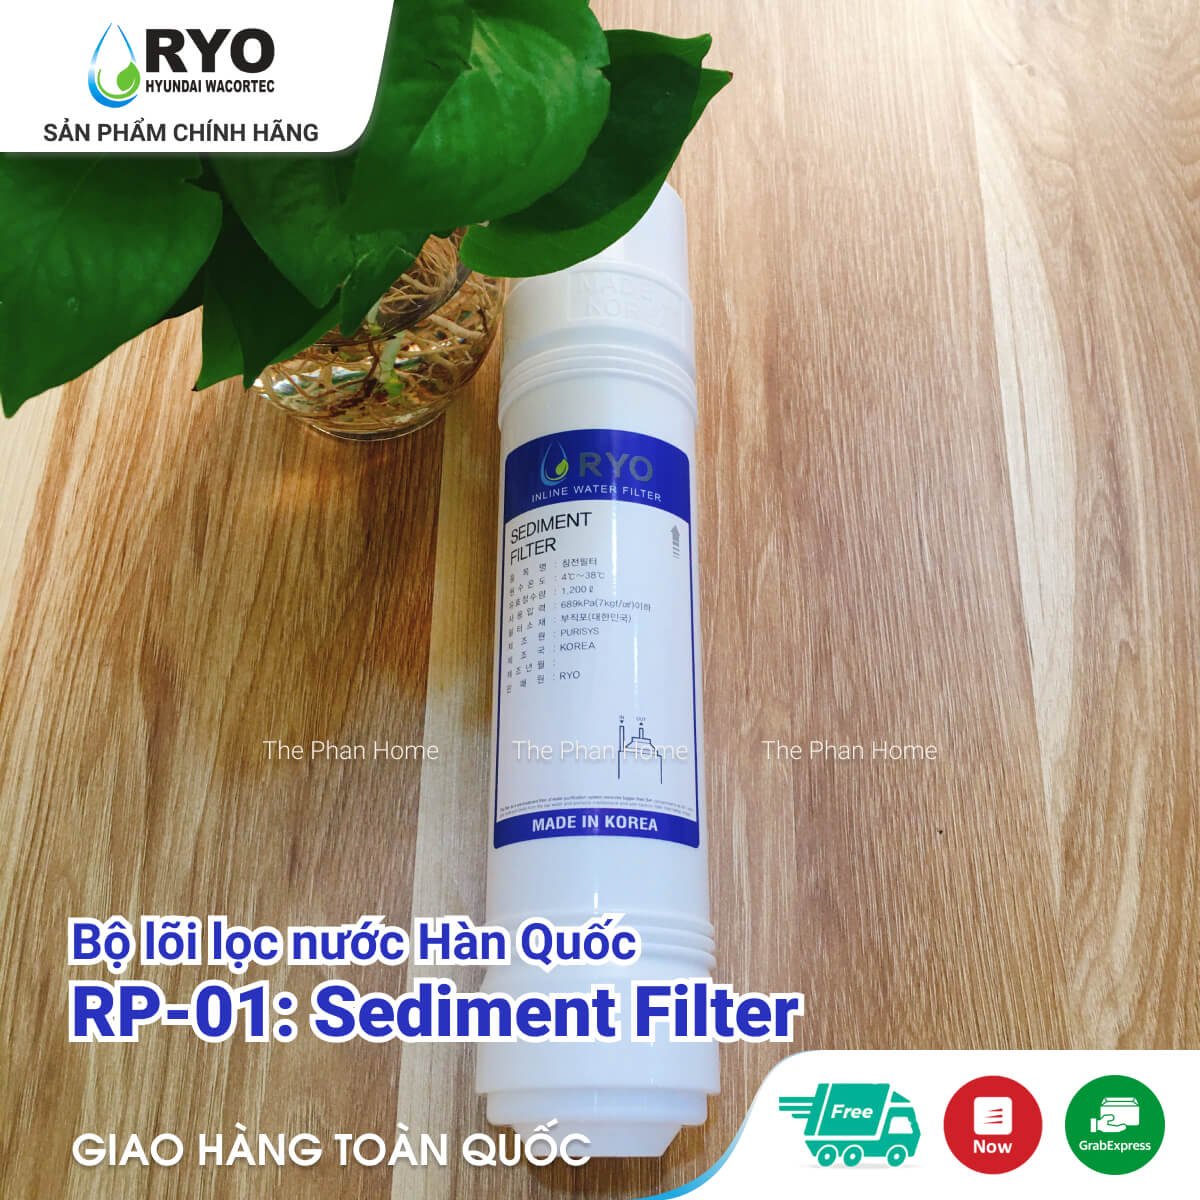 Lõi Lọc Nước RYO RP-01 - Sediment Filter - Nhập khẩu Hàn Quốc, dùng cho mọi dòng Máy Lọc Nước UF (như RYO Hyundai, KoriHome, Canzy, CNC, Humero...)